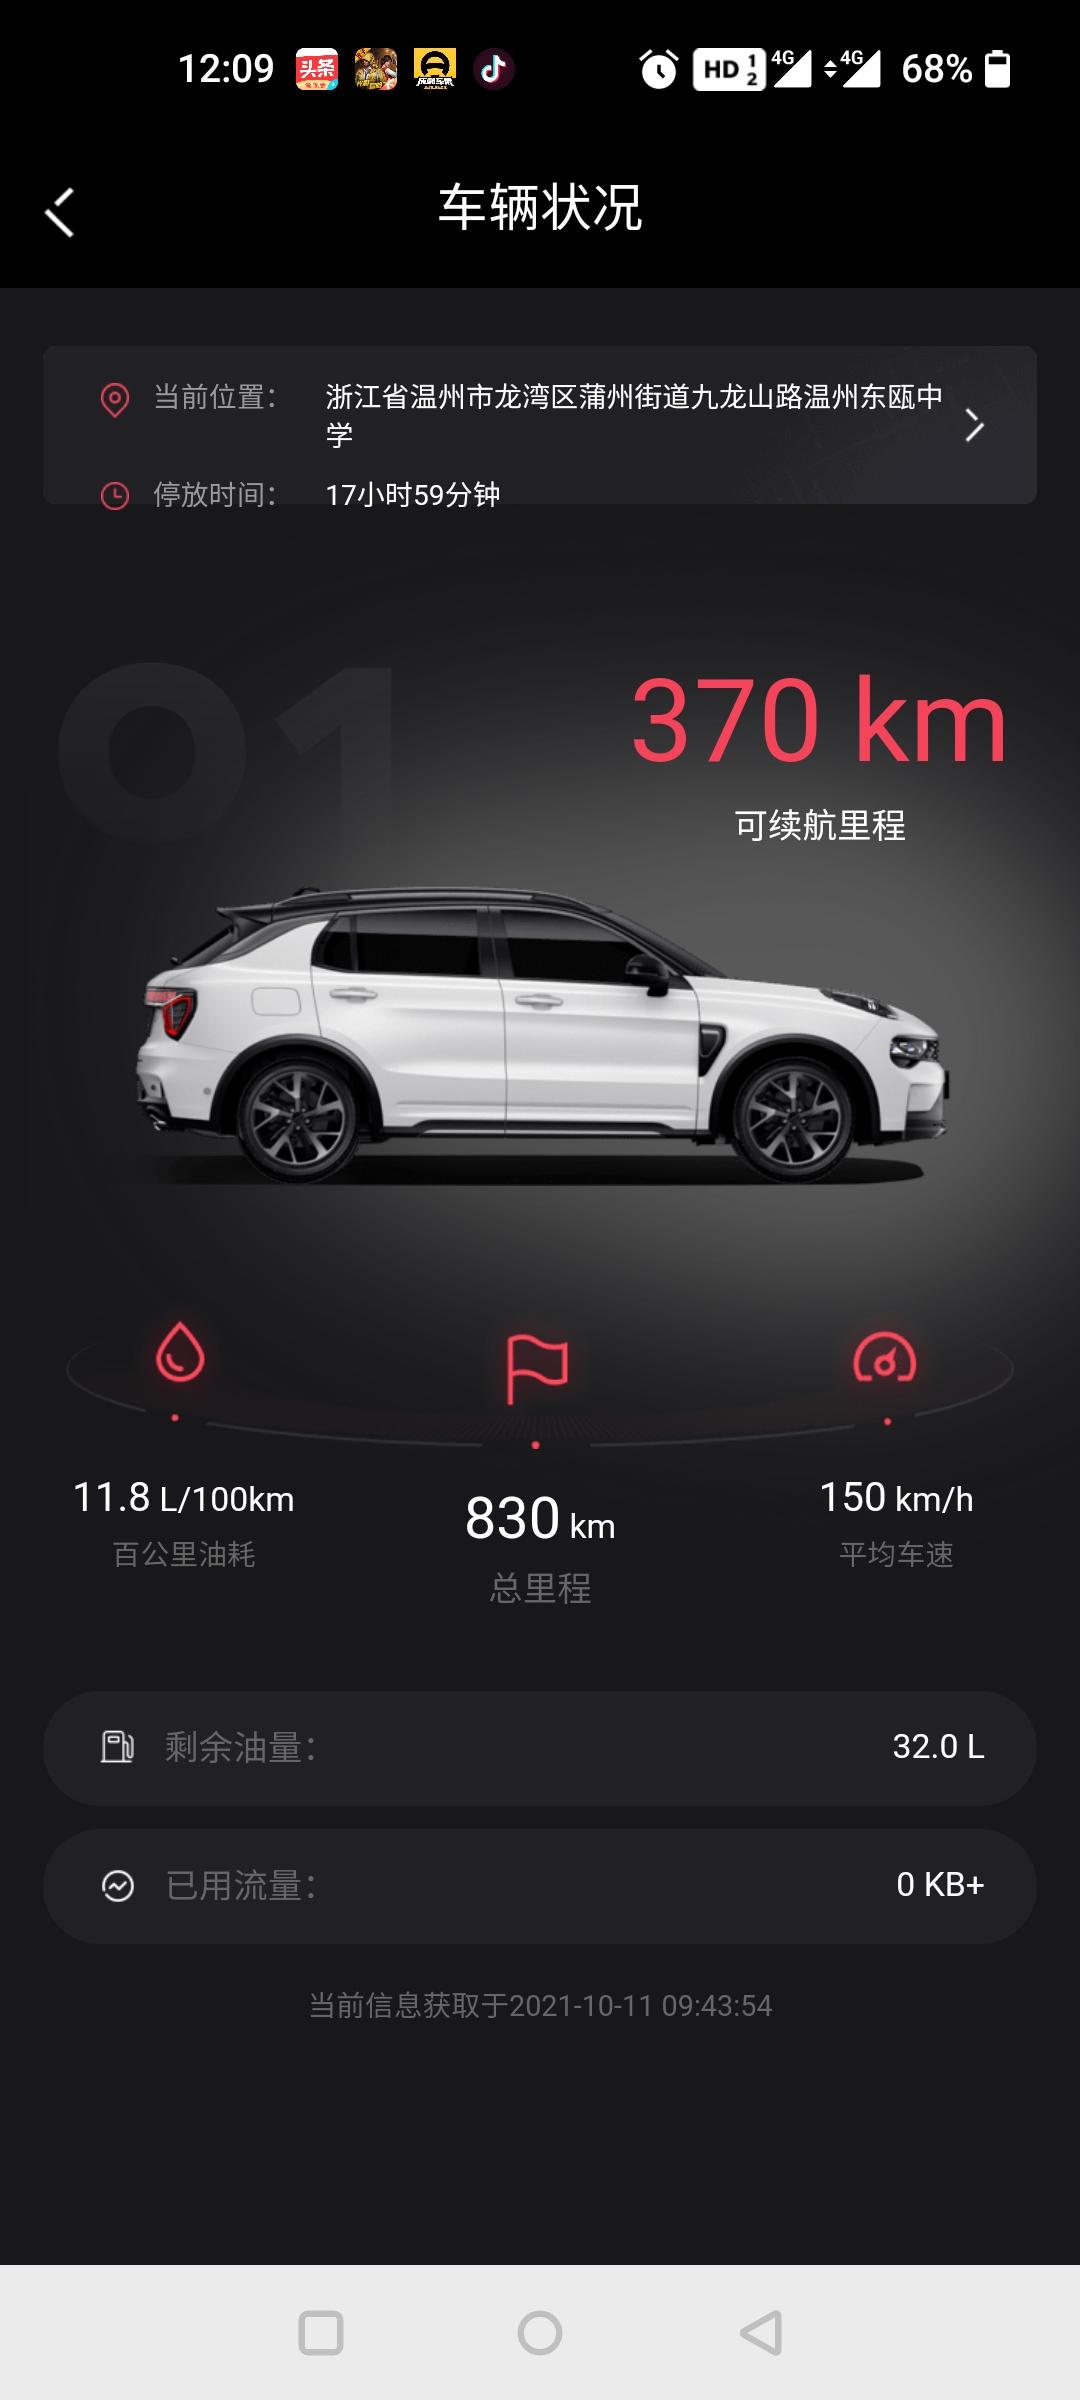 领克01 刚提的车 领克app刚入网 手机上显示的总里程 跟车上差700多公里 这个正常吗